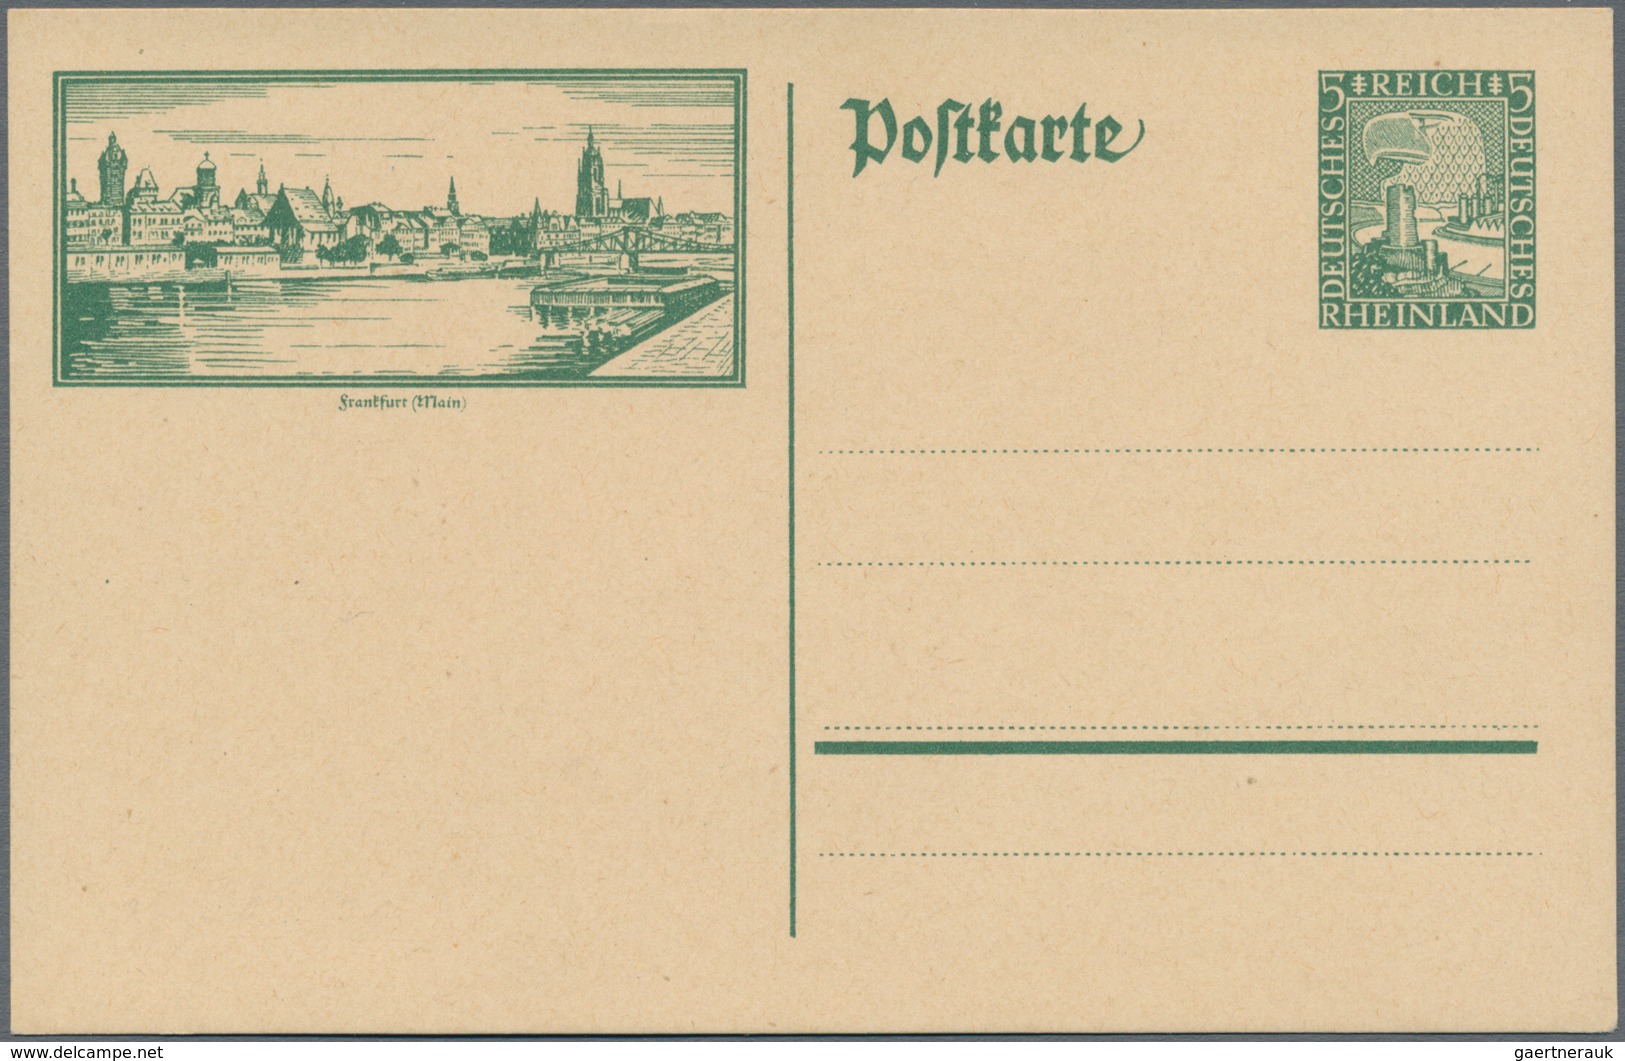 Deutsches Reich - Ganzsachen: 1925, vier ungebrauchte Ganzsachenbildpostkarten Wst. Rheinland 5 (Pf)